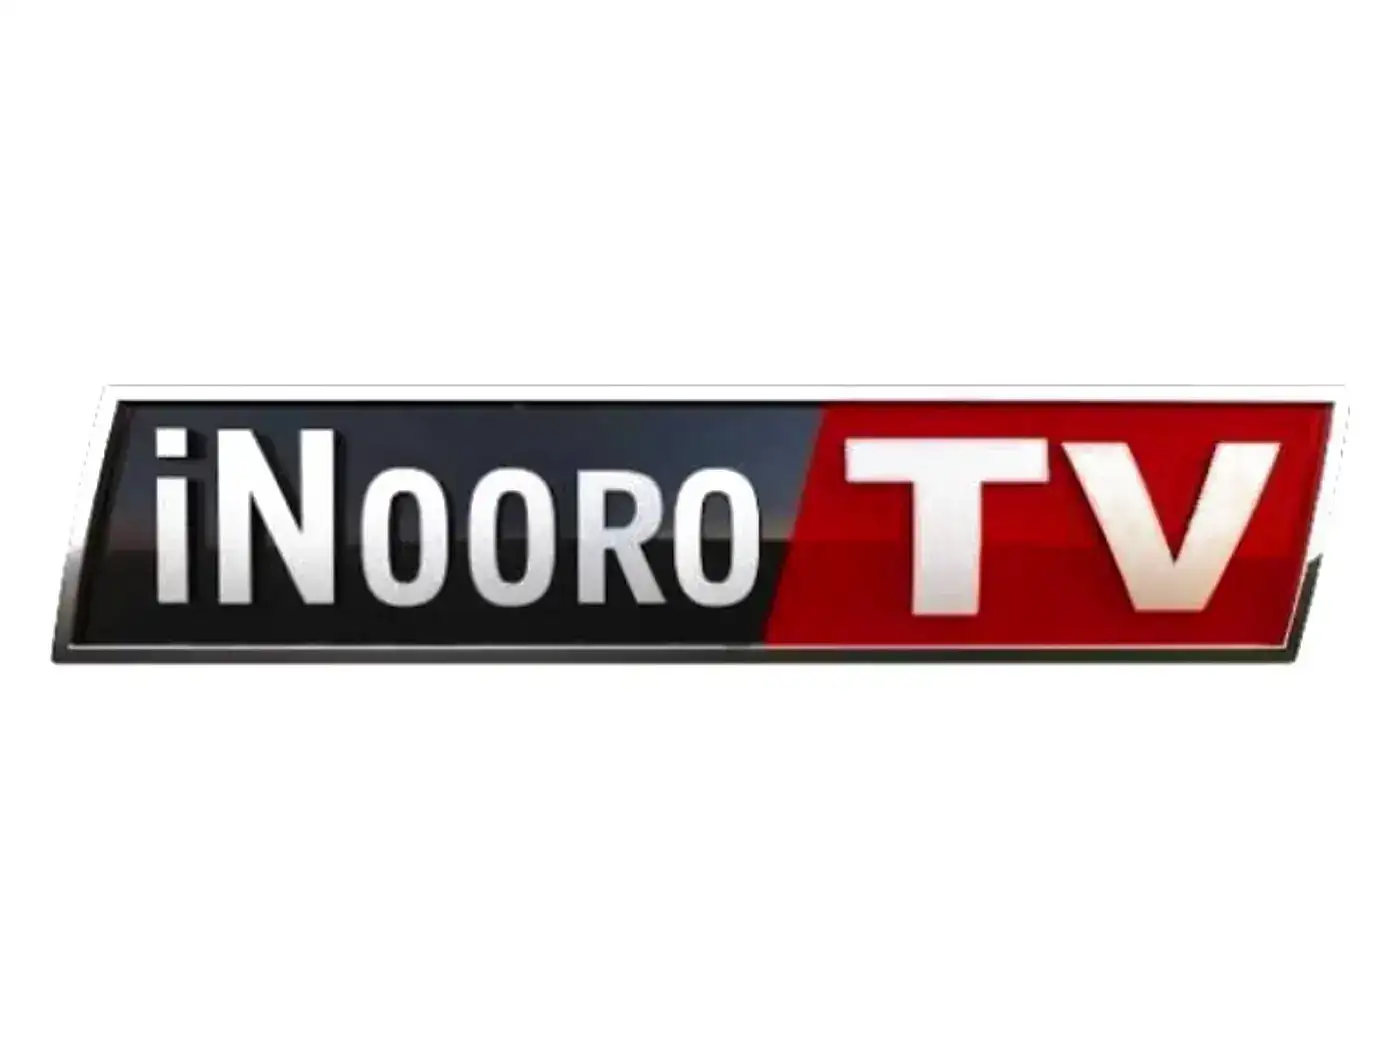 Inooro TV live